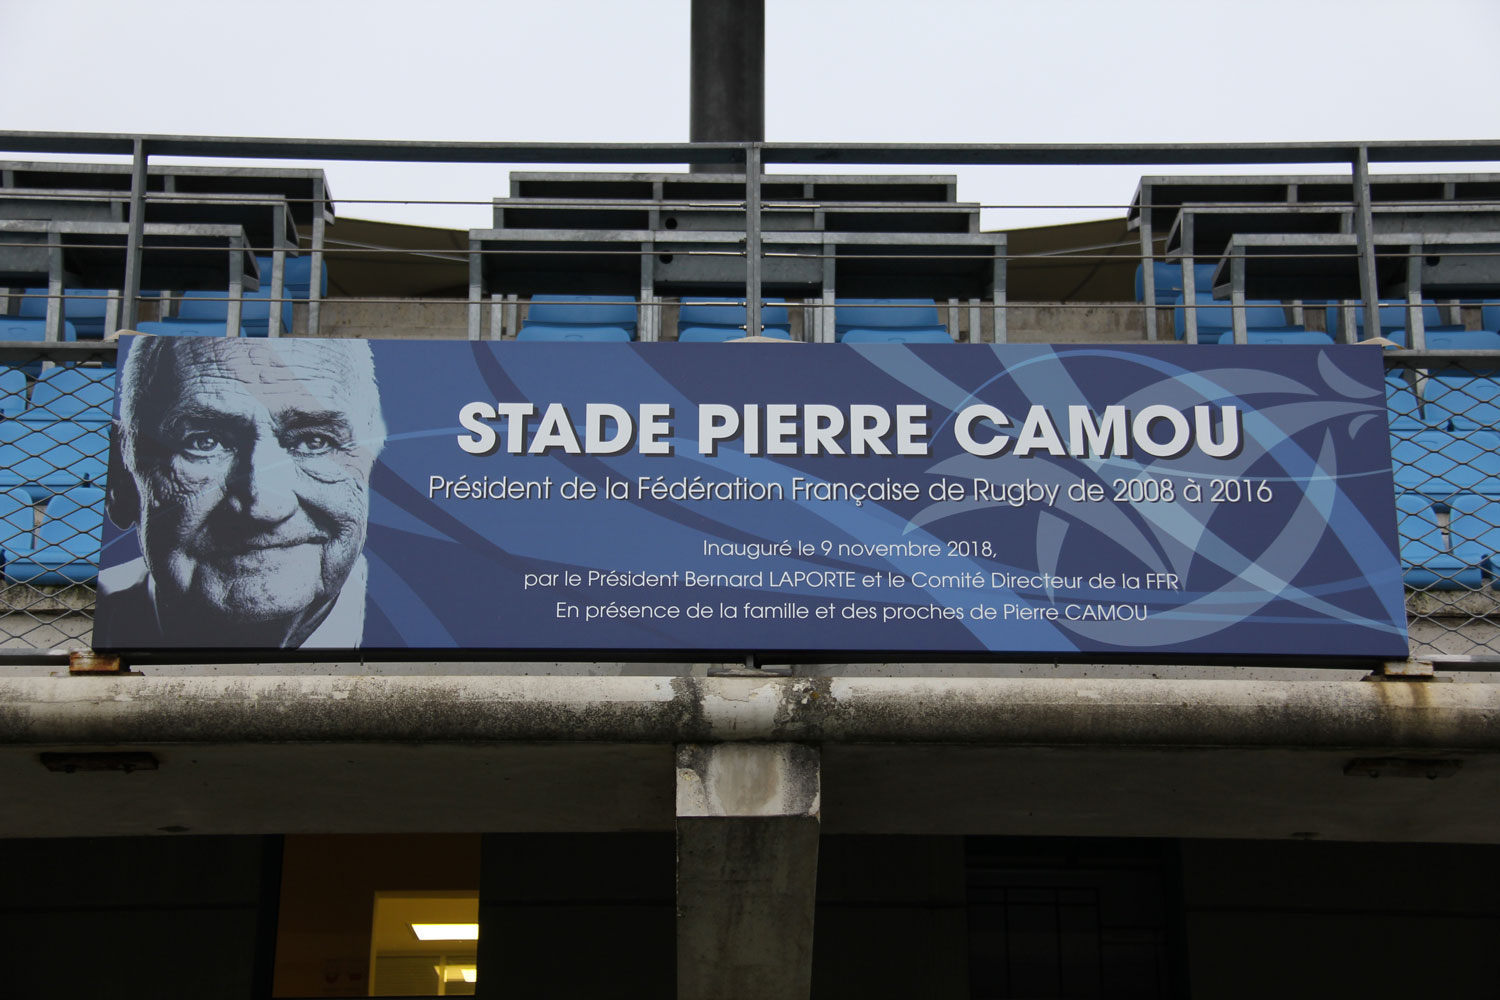 Le premier stade, sur la gauche en suivant l’allée principale, est le stade Pierre CAMOU, du nom du président de la Fédération ces dernières années © Globe Reporters